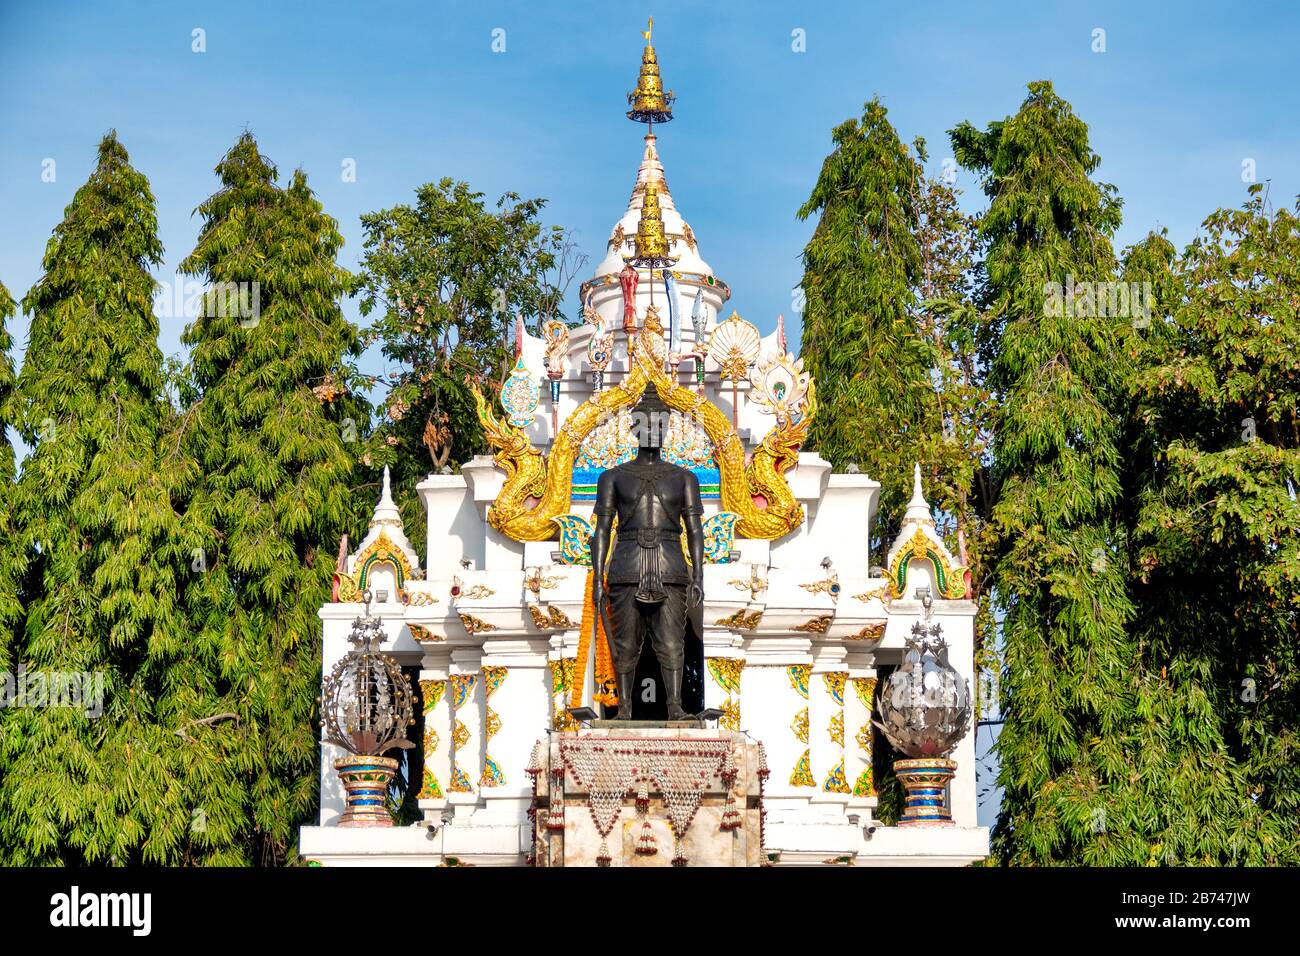 Pho Khun Ngam Muang monument, Phayao, Thailand Stock Photo